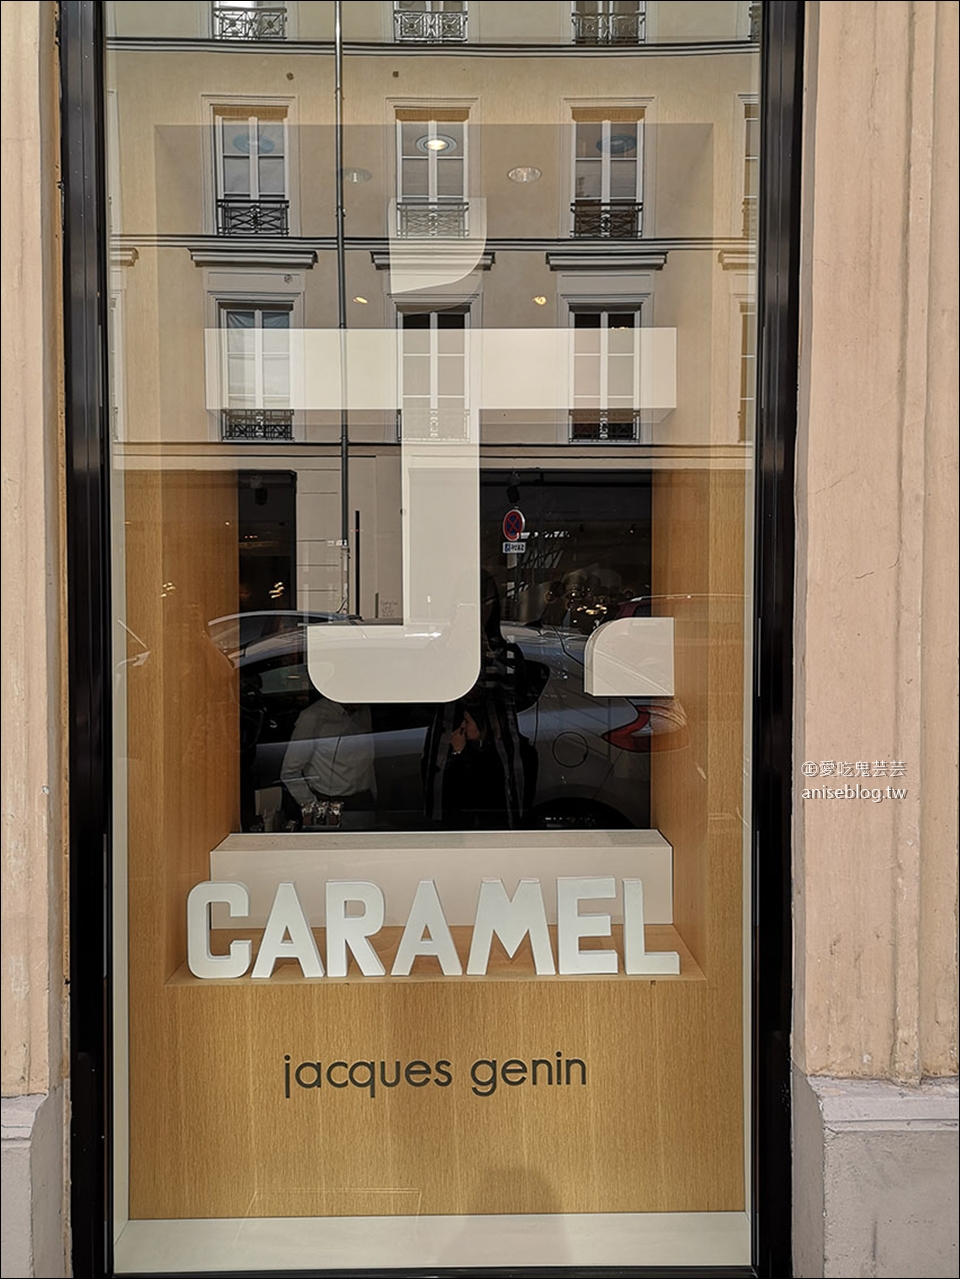 巴黎甜點推薦 | jacques genin，我與眾貴婦們的第一名甜點店